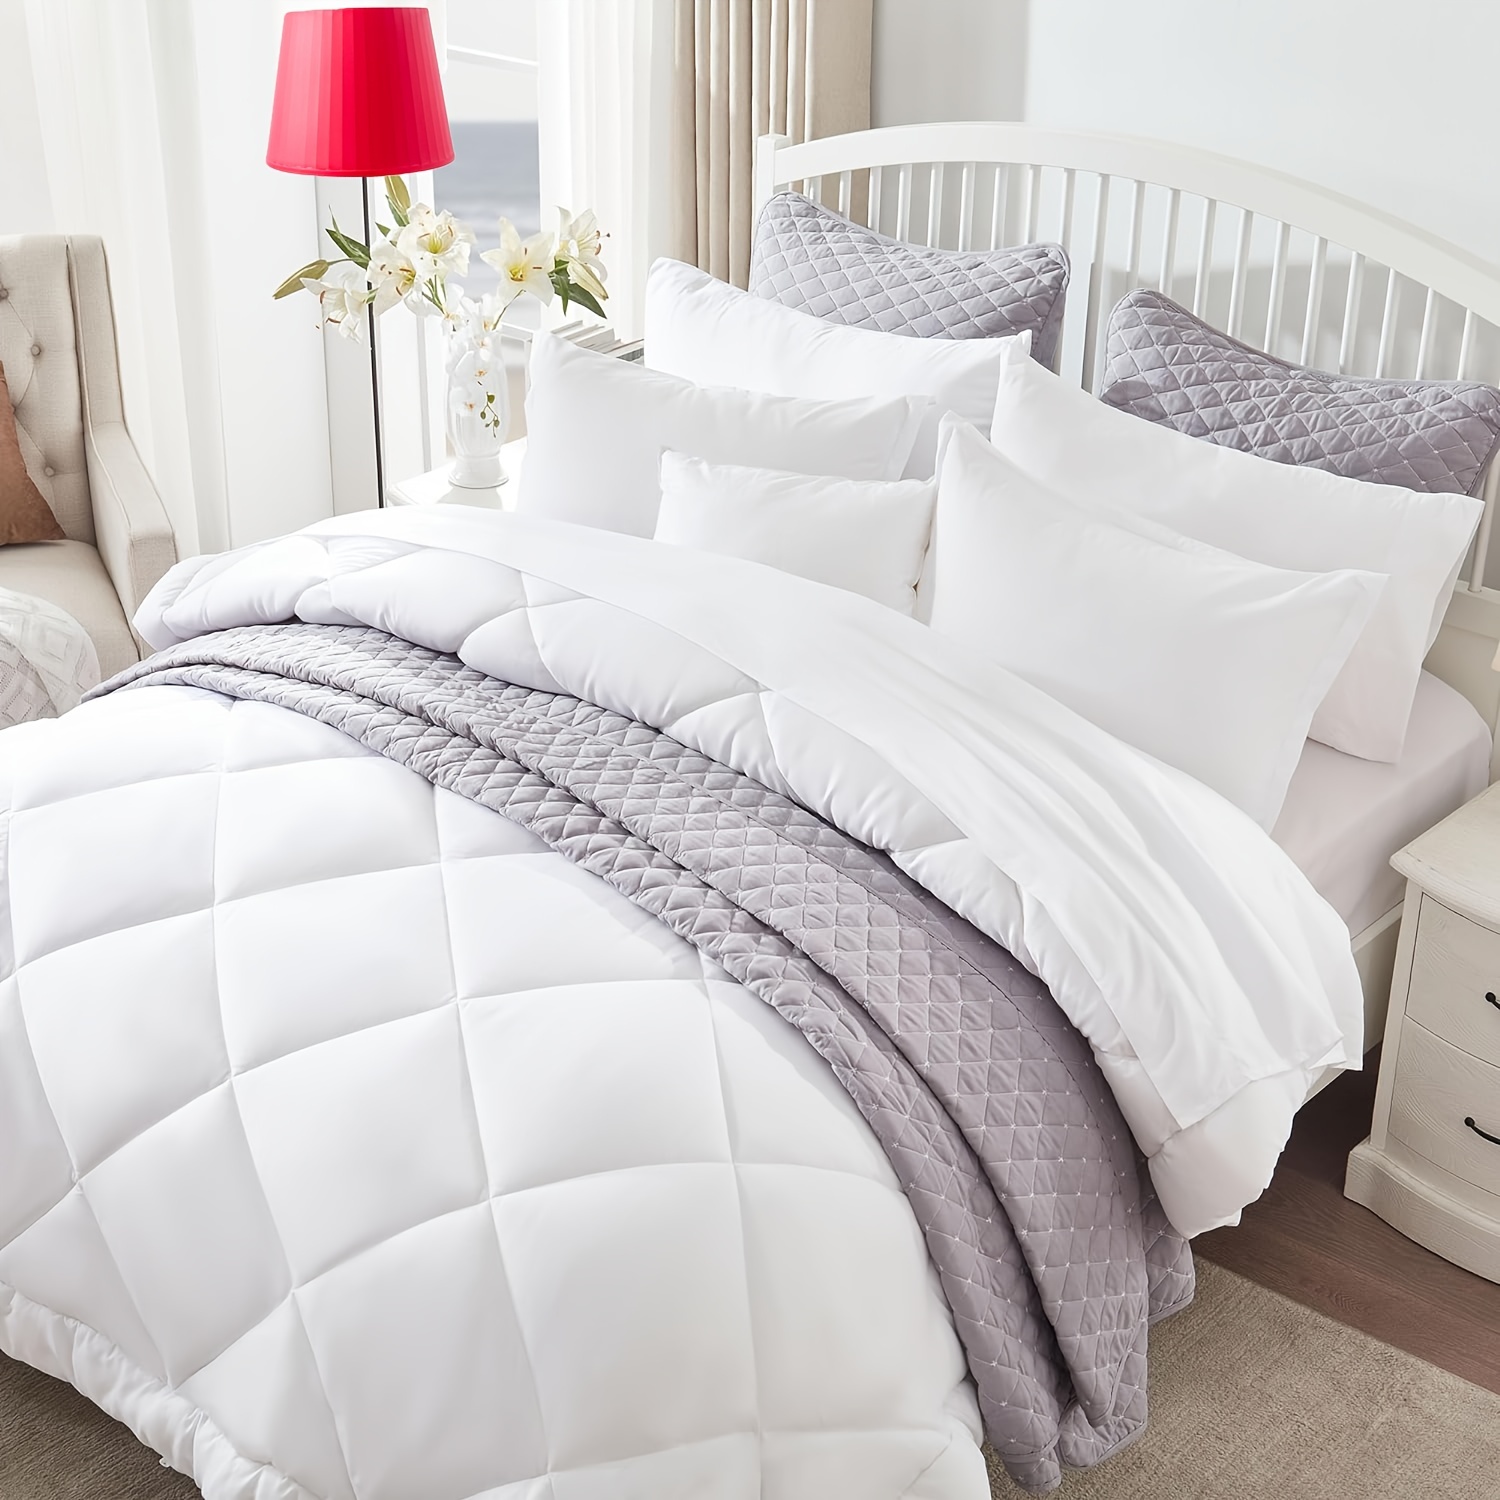 Utopia Bedding Comforter Duvet Insert Quilted Comforter w/ Corner Tabs Twin  Size